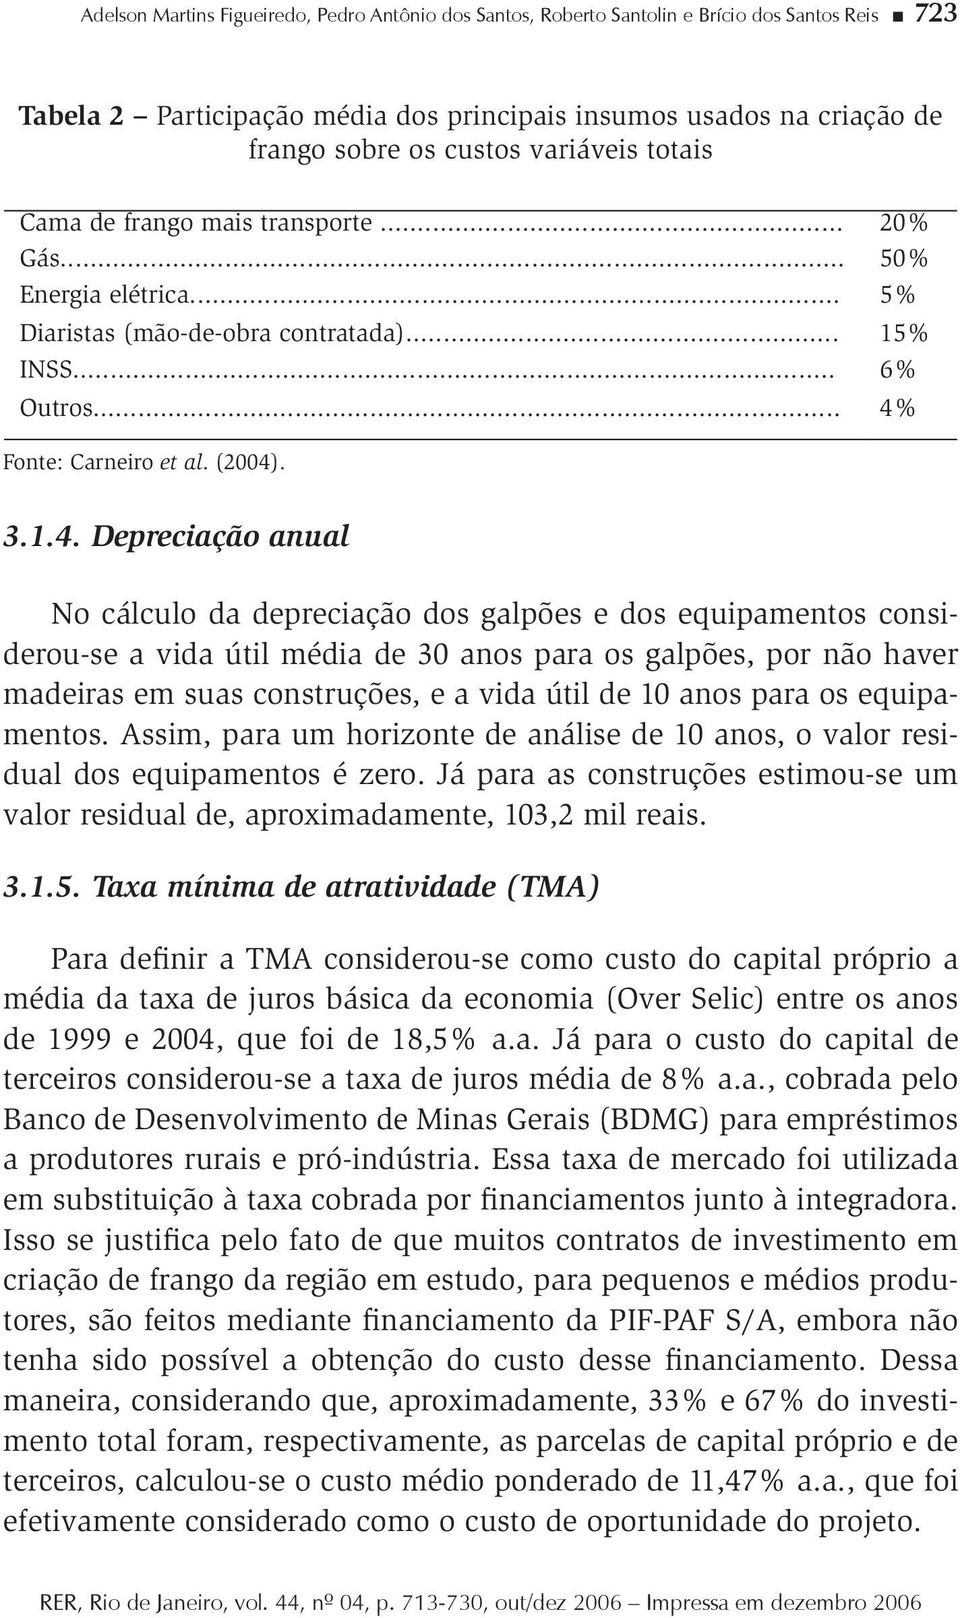 Fone: Carneiro e al. (2004)